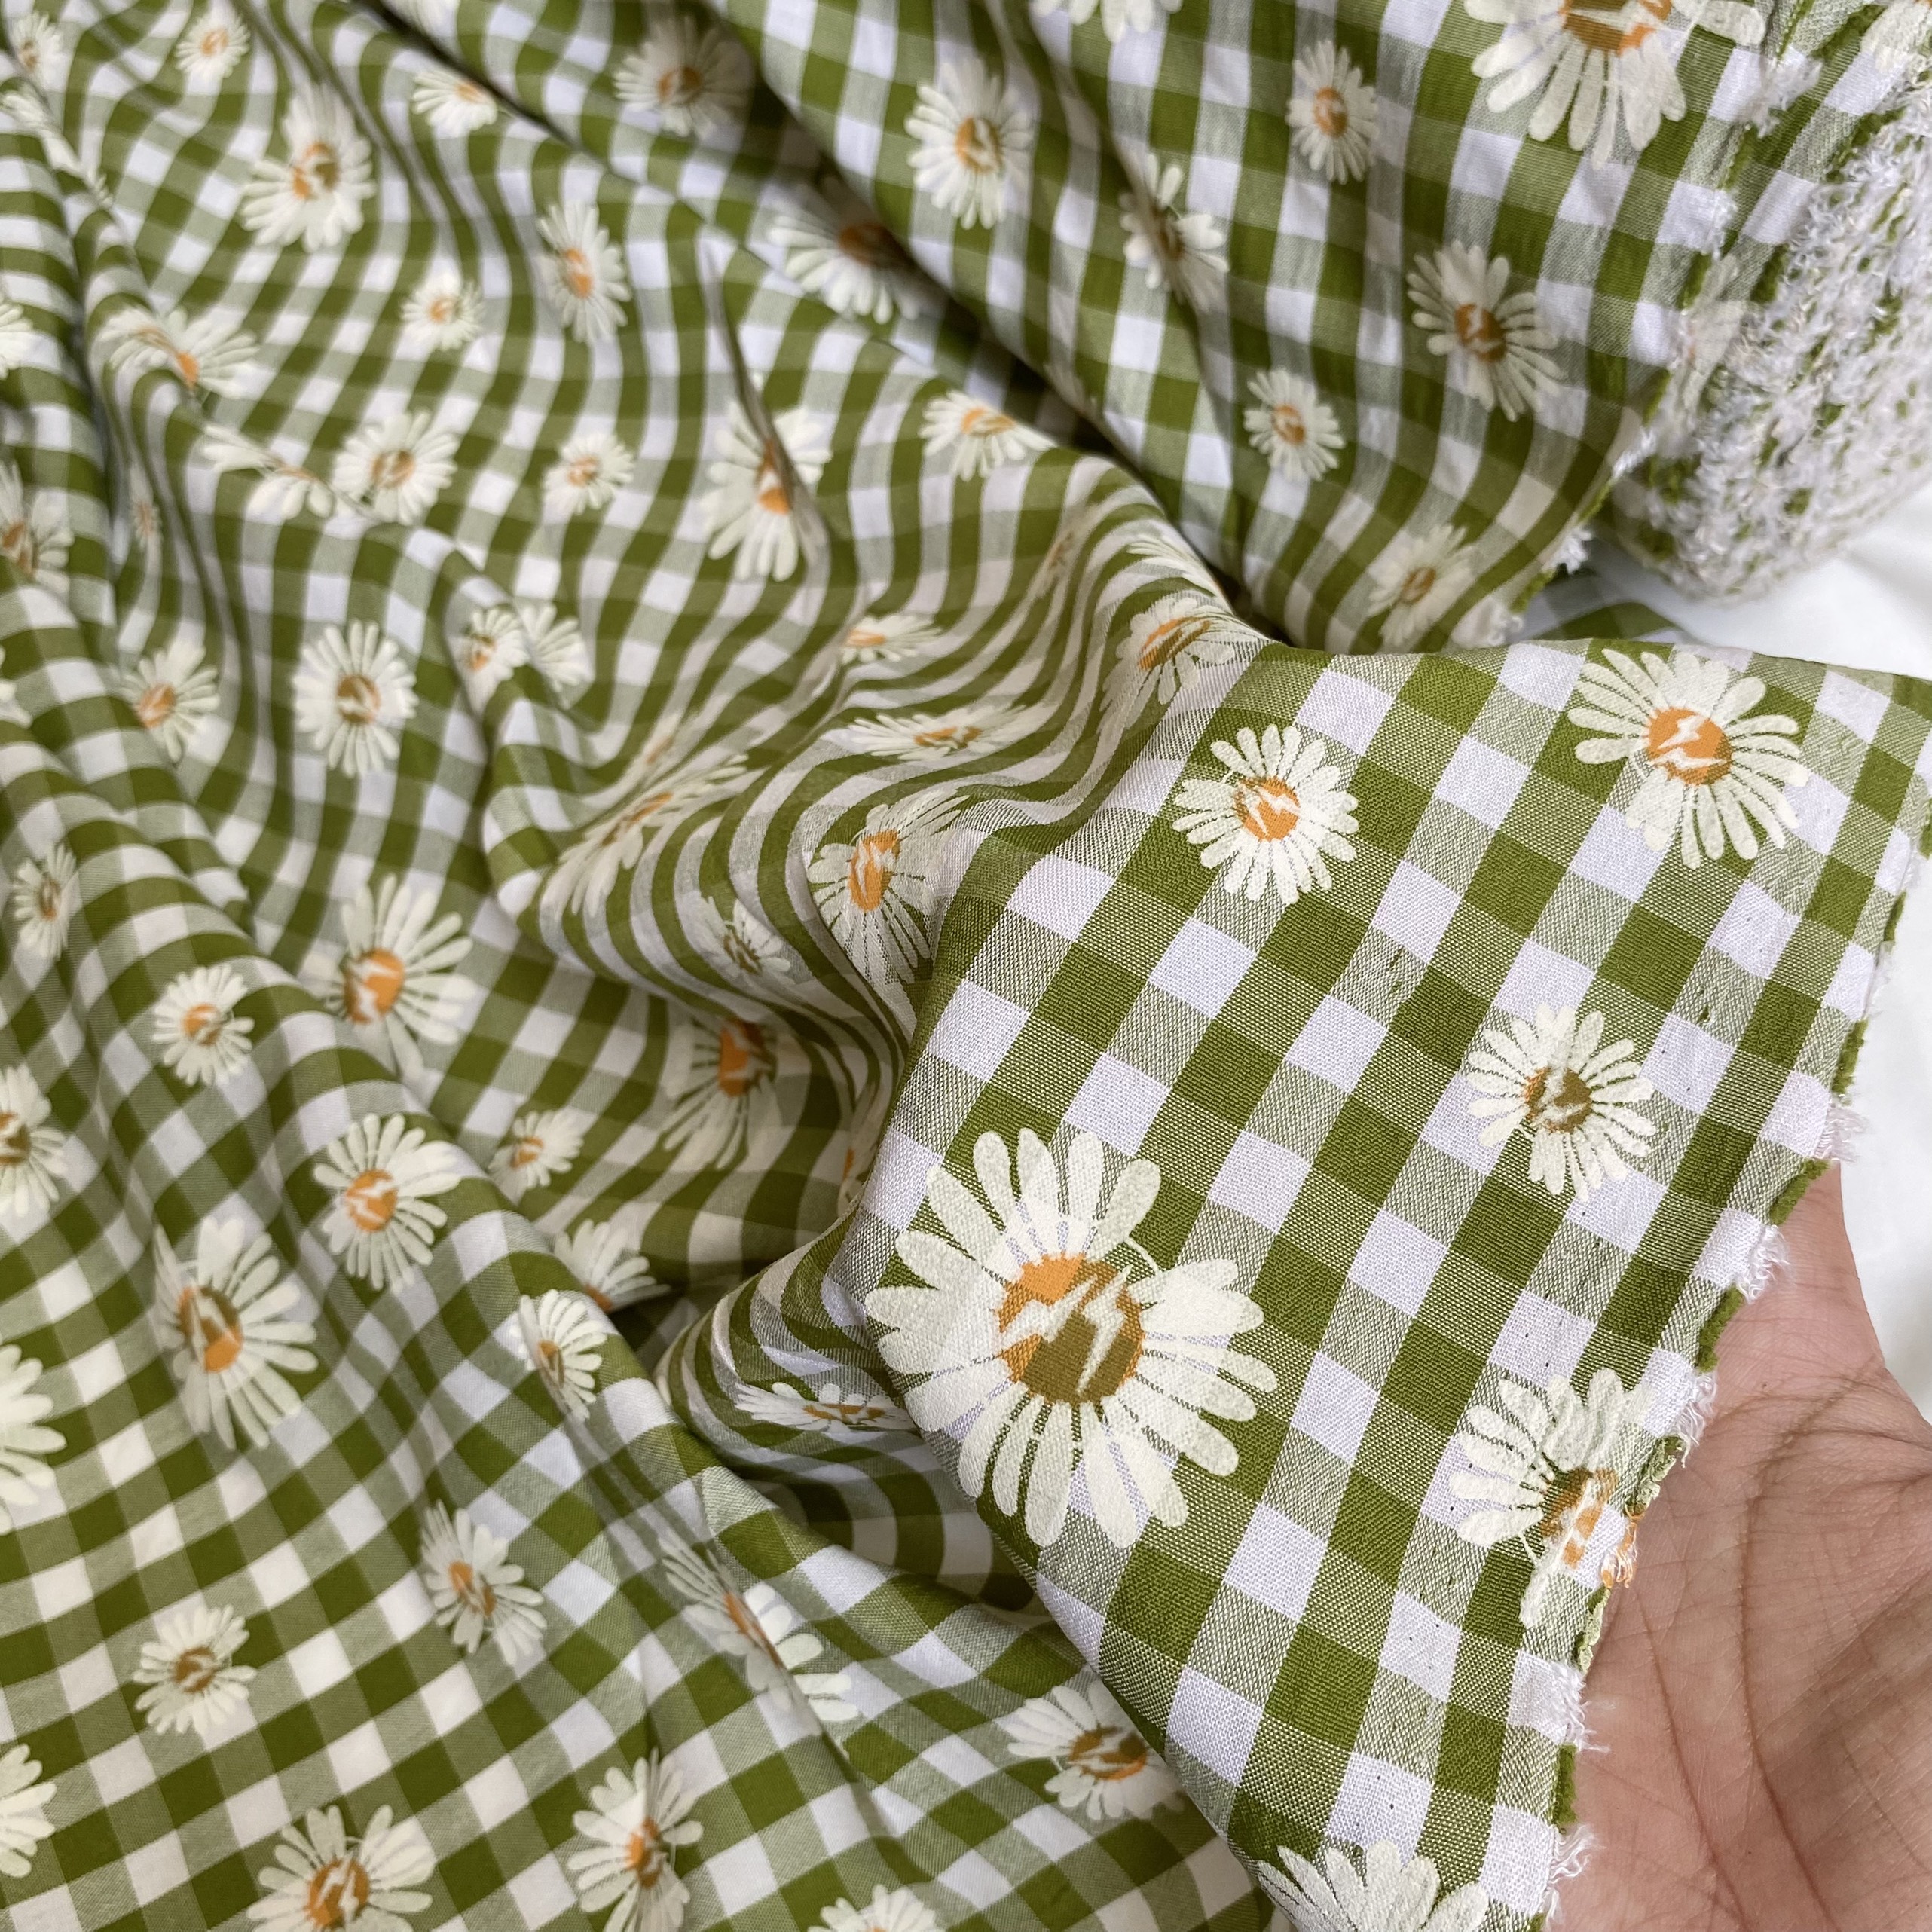 Vải Thô Cotton Pha Xanh Lớn Hoa Cúc Sơn Khổ 1m46 - Không Co Giãn - May Đầm, Áo Kiểu, Đồ Bộ, Đồ Trẻ Em